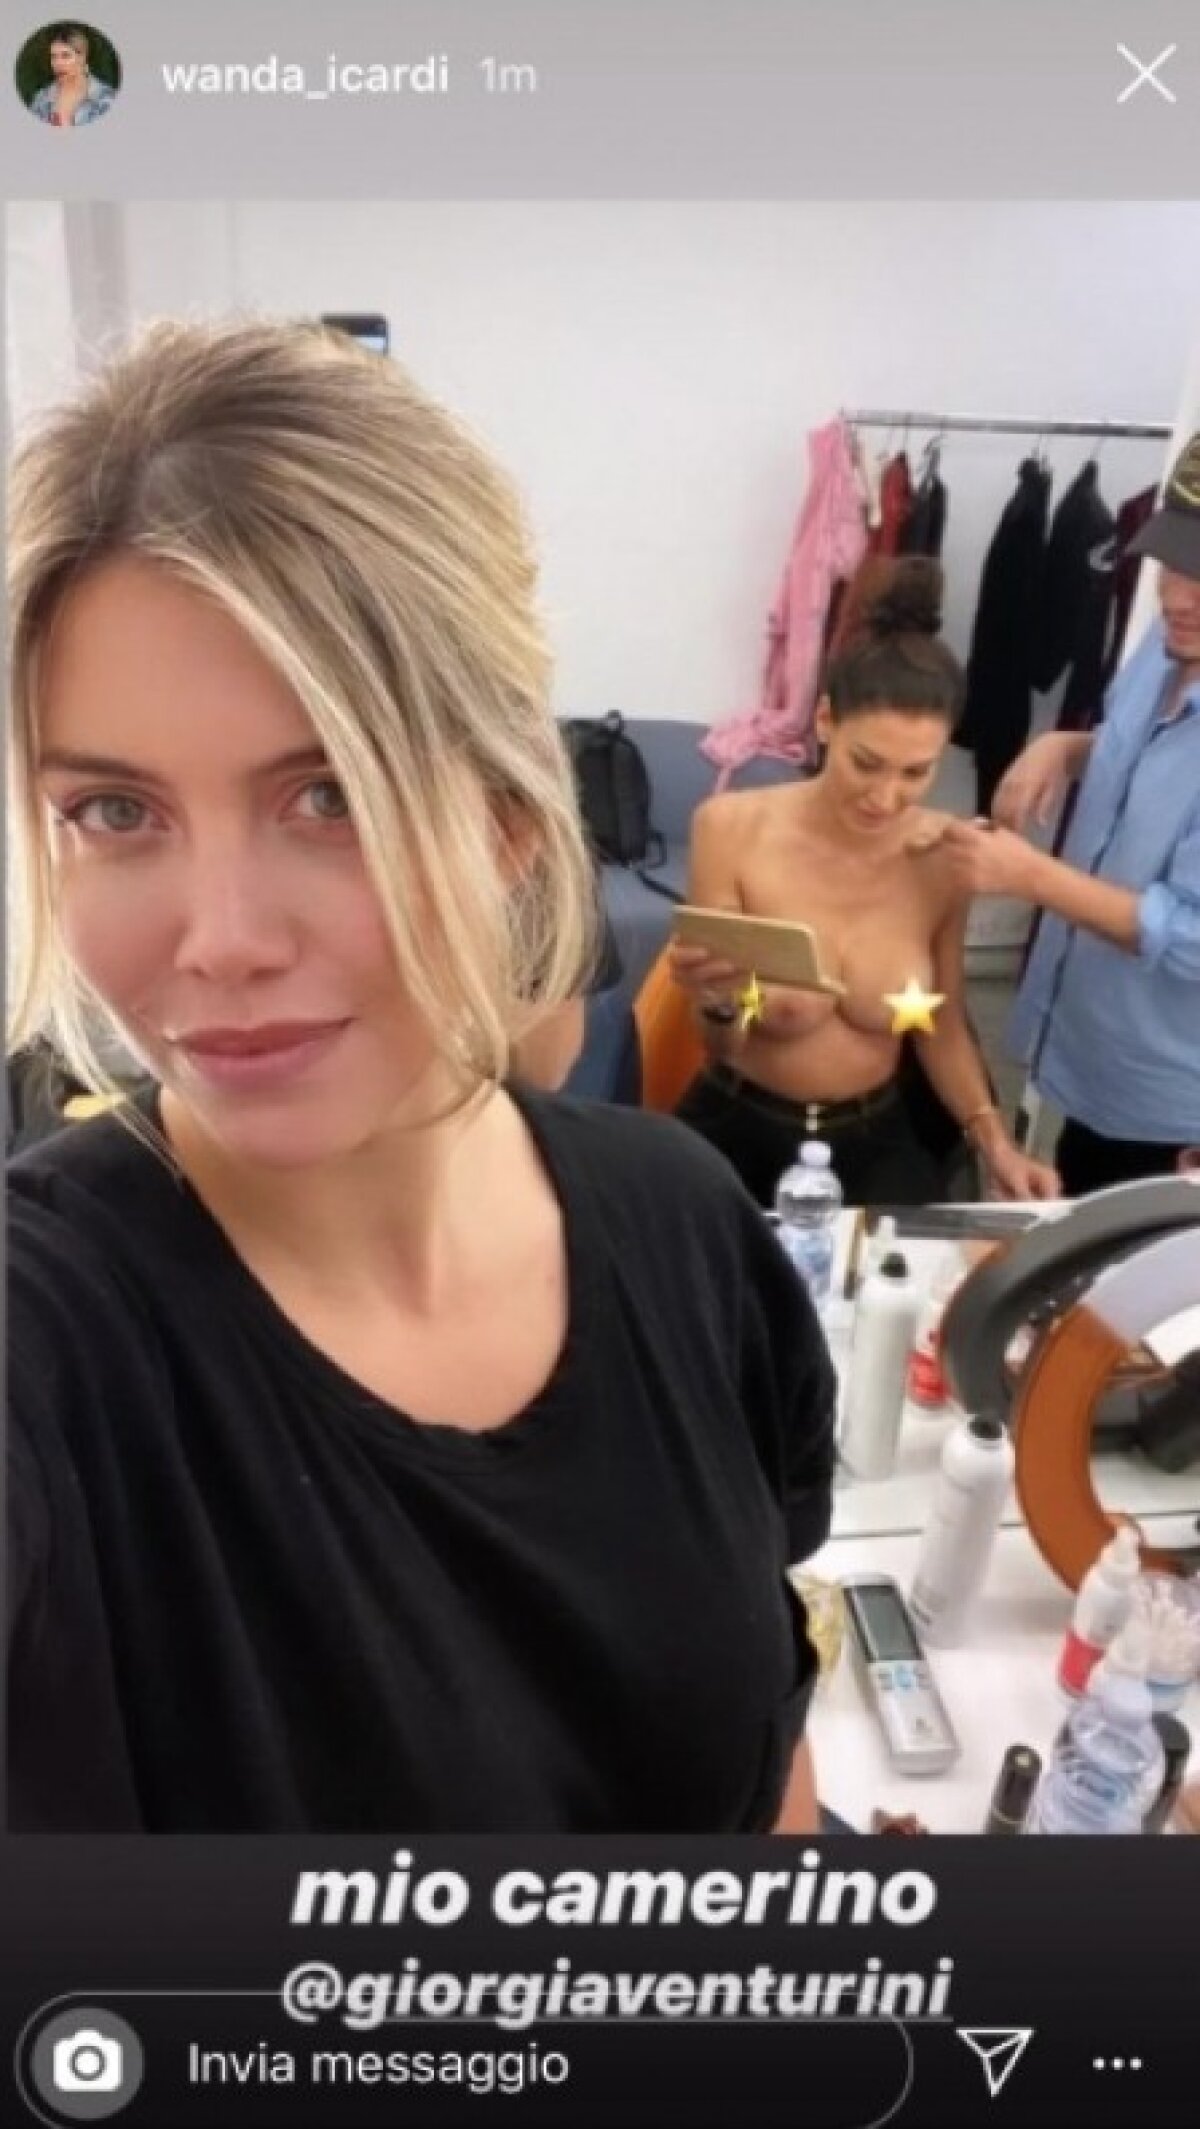 Atenție, imagini XXX! Wanda Nara a întrecut orice măsură! A postat un selfie cu Giorgia Venturini în sânii goi